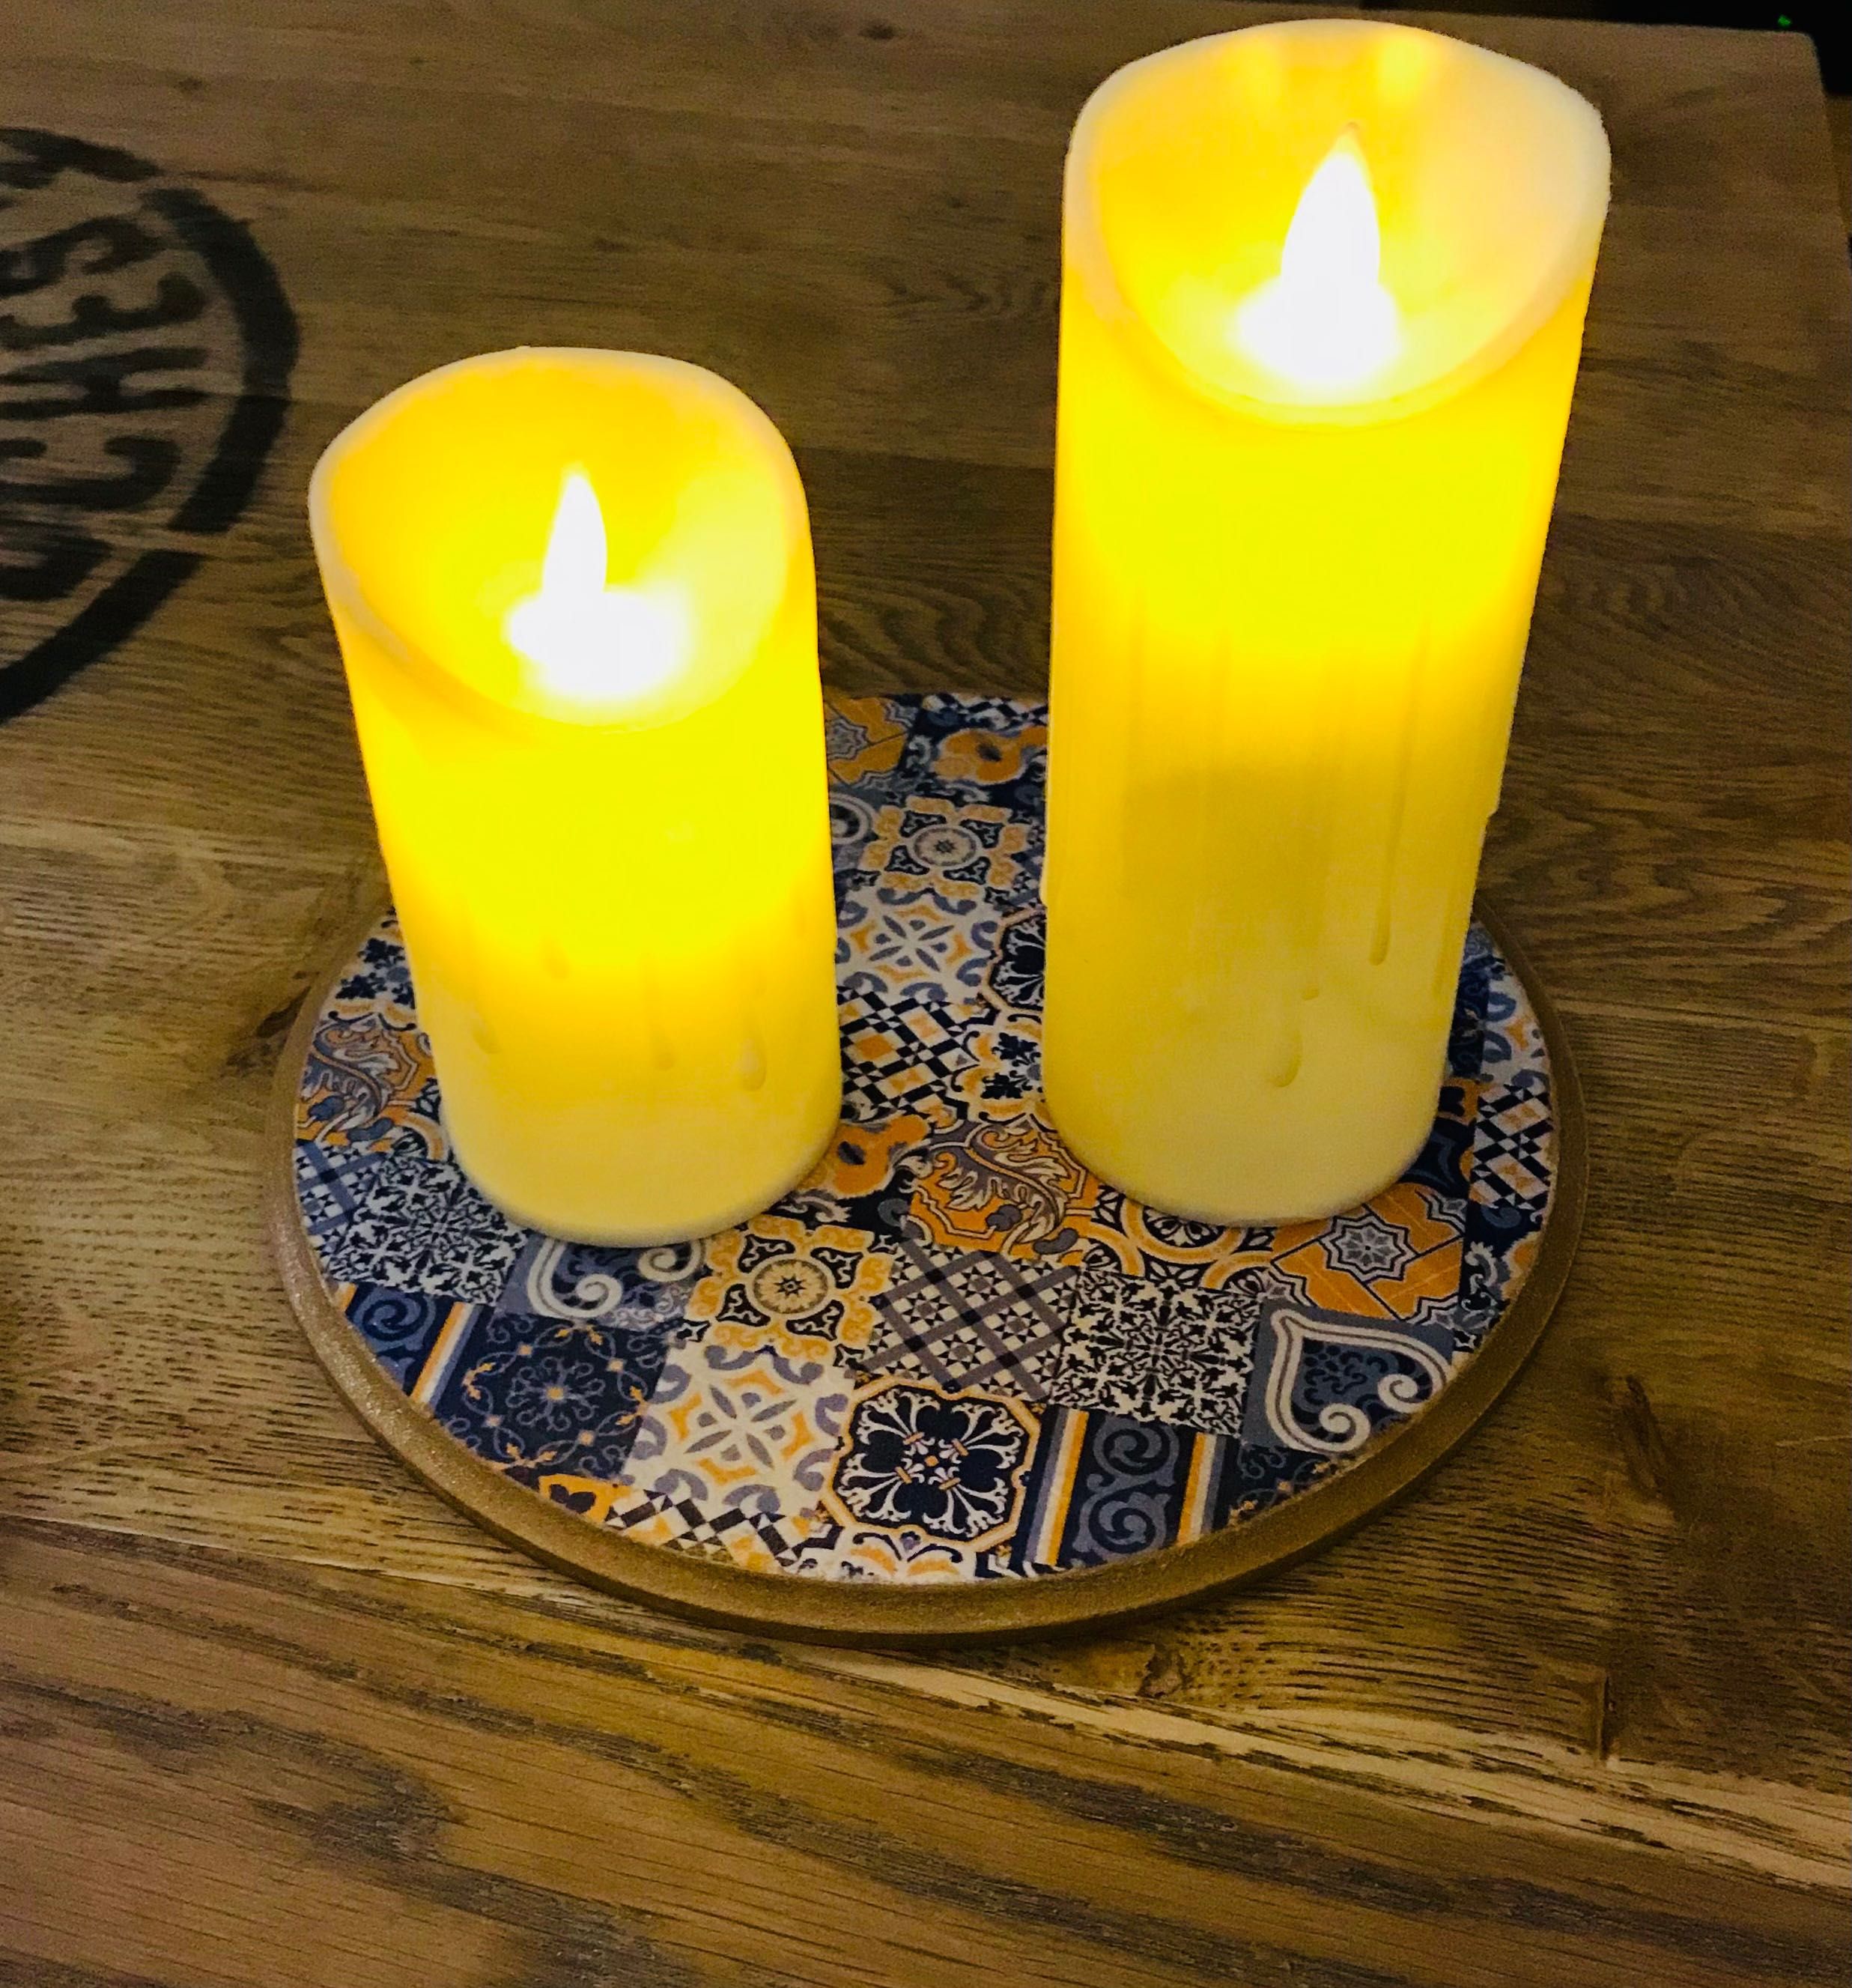 Podkładka podstawka pod świece na stół okrągła